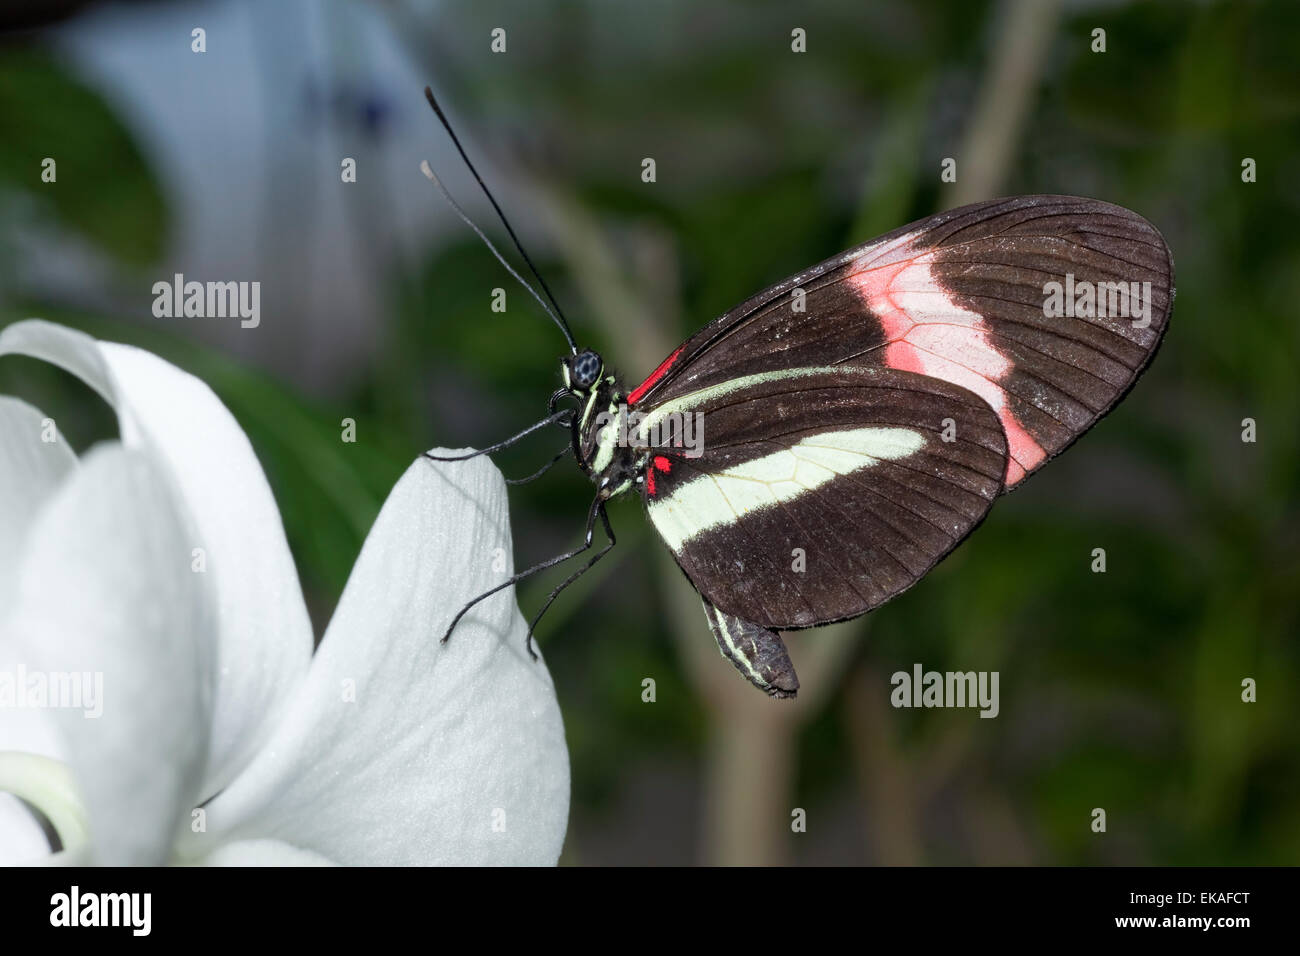 Postbote Schmetterling, gemeinsame Briefträger - Heliconius Melpomene Rosina - Mittelamerika Stockfoto